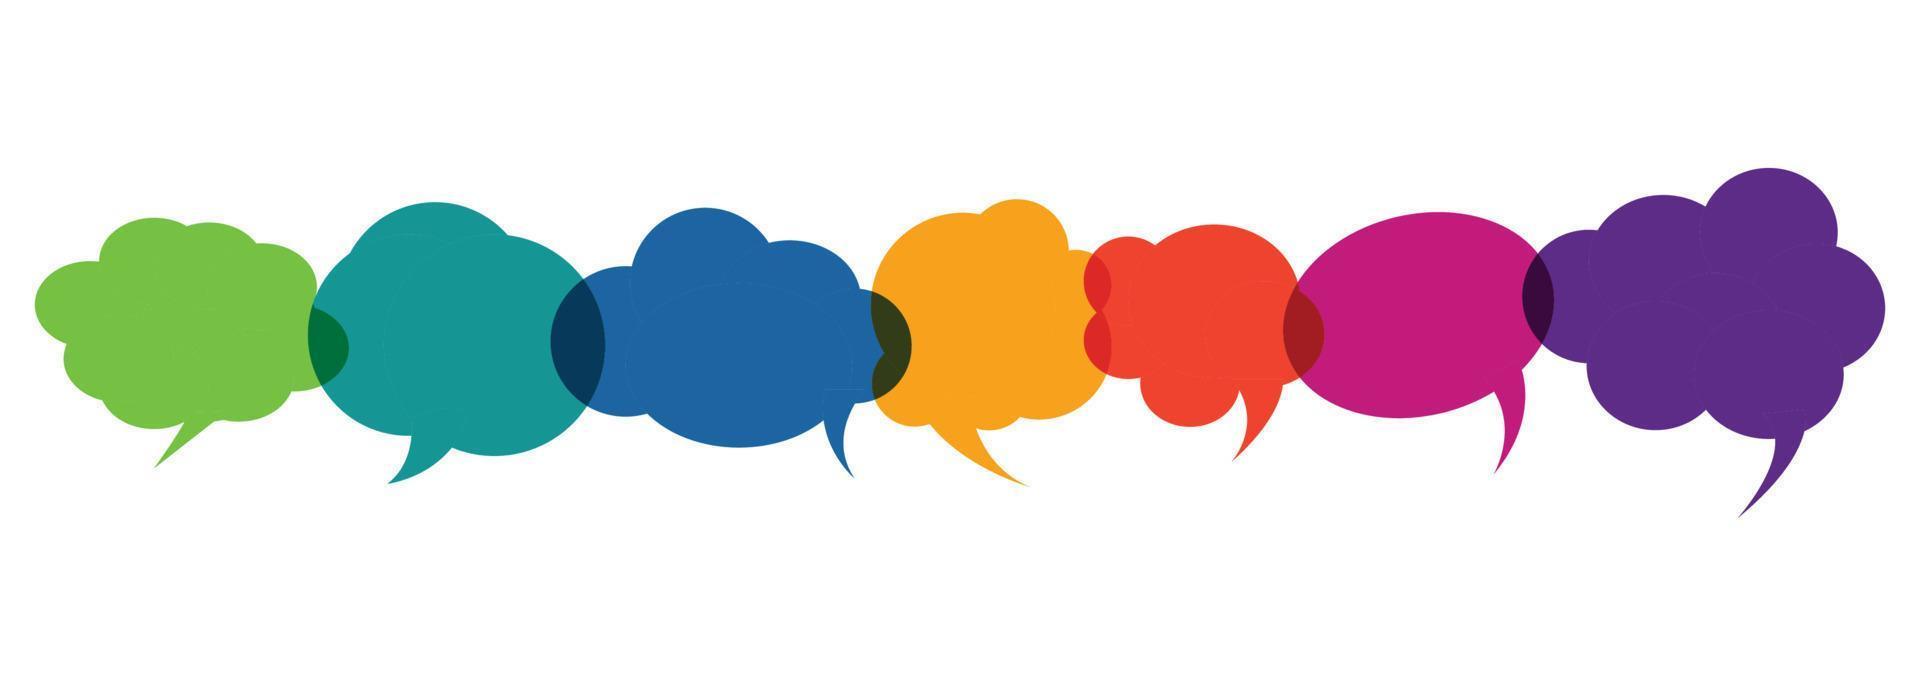 concetto di icona di comunicazione fumetto colorato. disegno di illustrazione vettoriale per parlare, discussione, chat e simbolo di conversazione